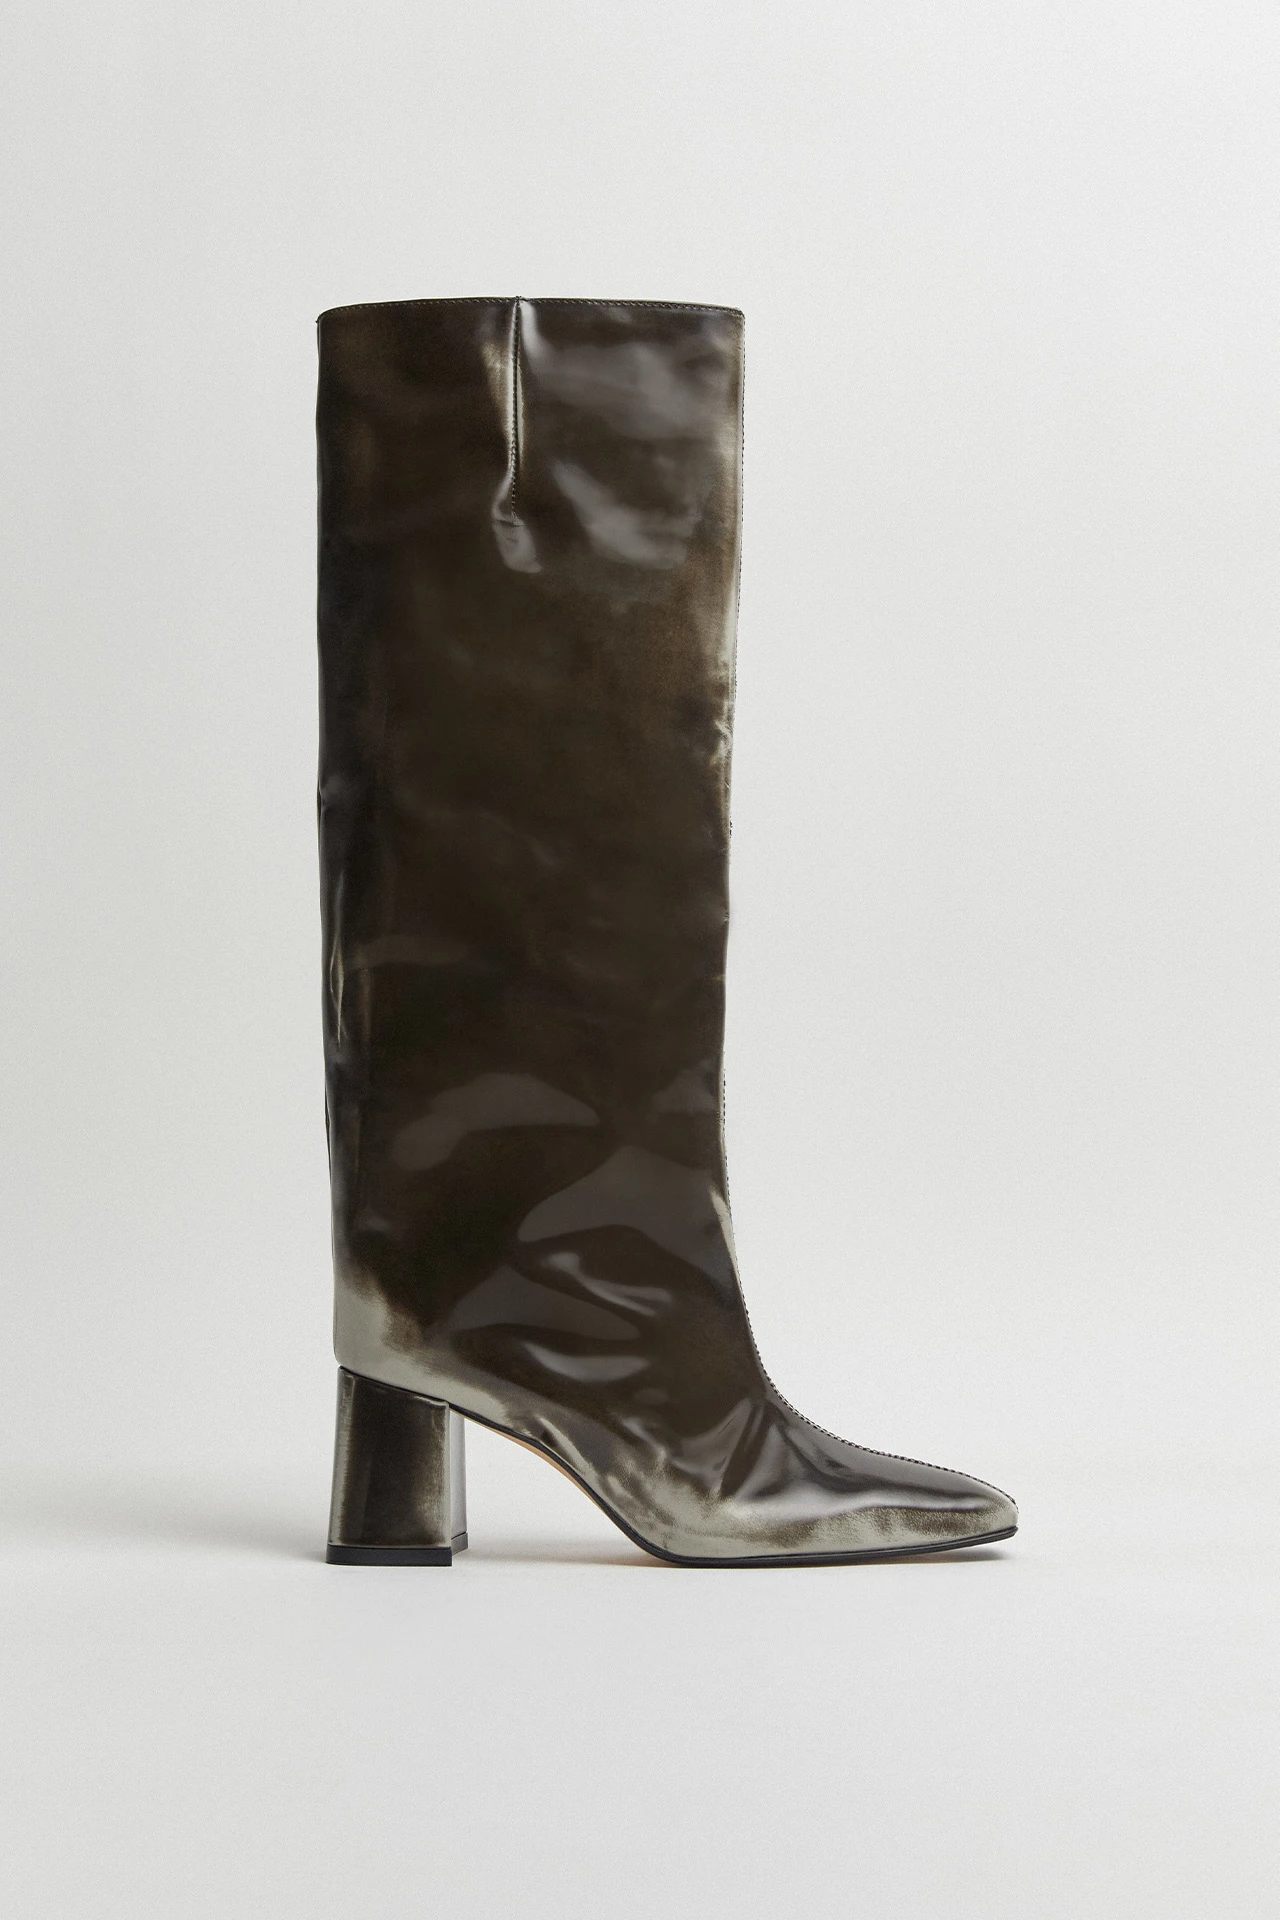 Miista-finola-grey-tall-boots-01